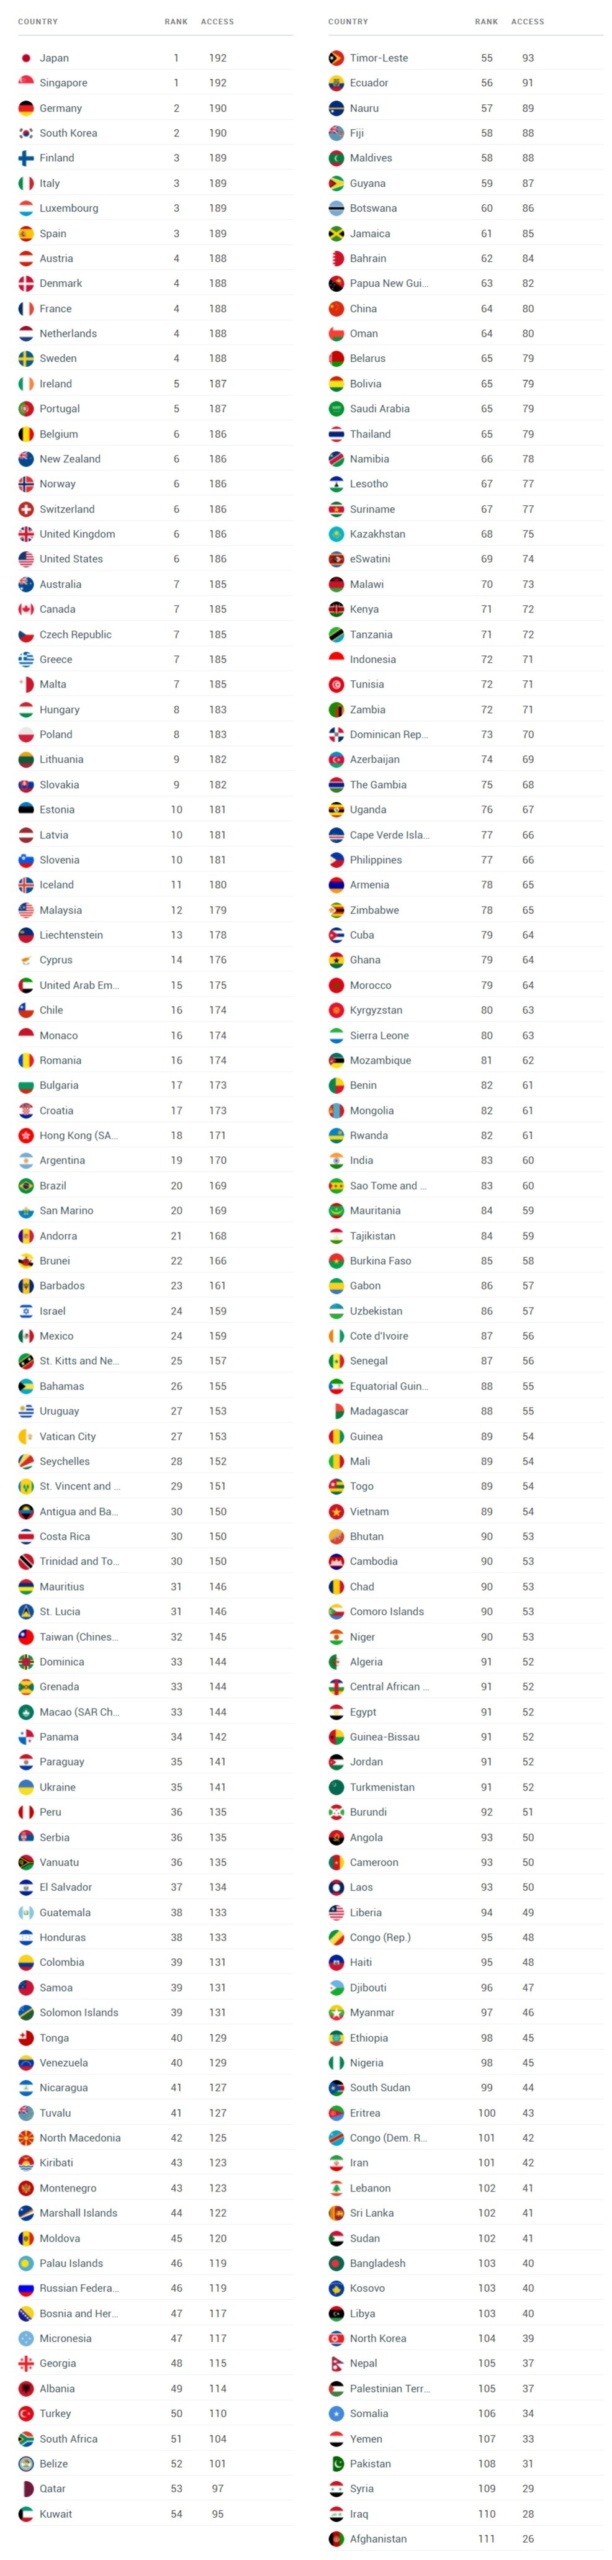 Україна посіла 35 місце у рейтингу паспортів світу, піднявшись ще на три позиції у порівнянні з попереднім списком